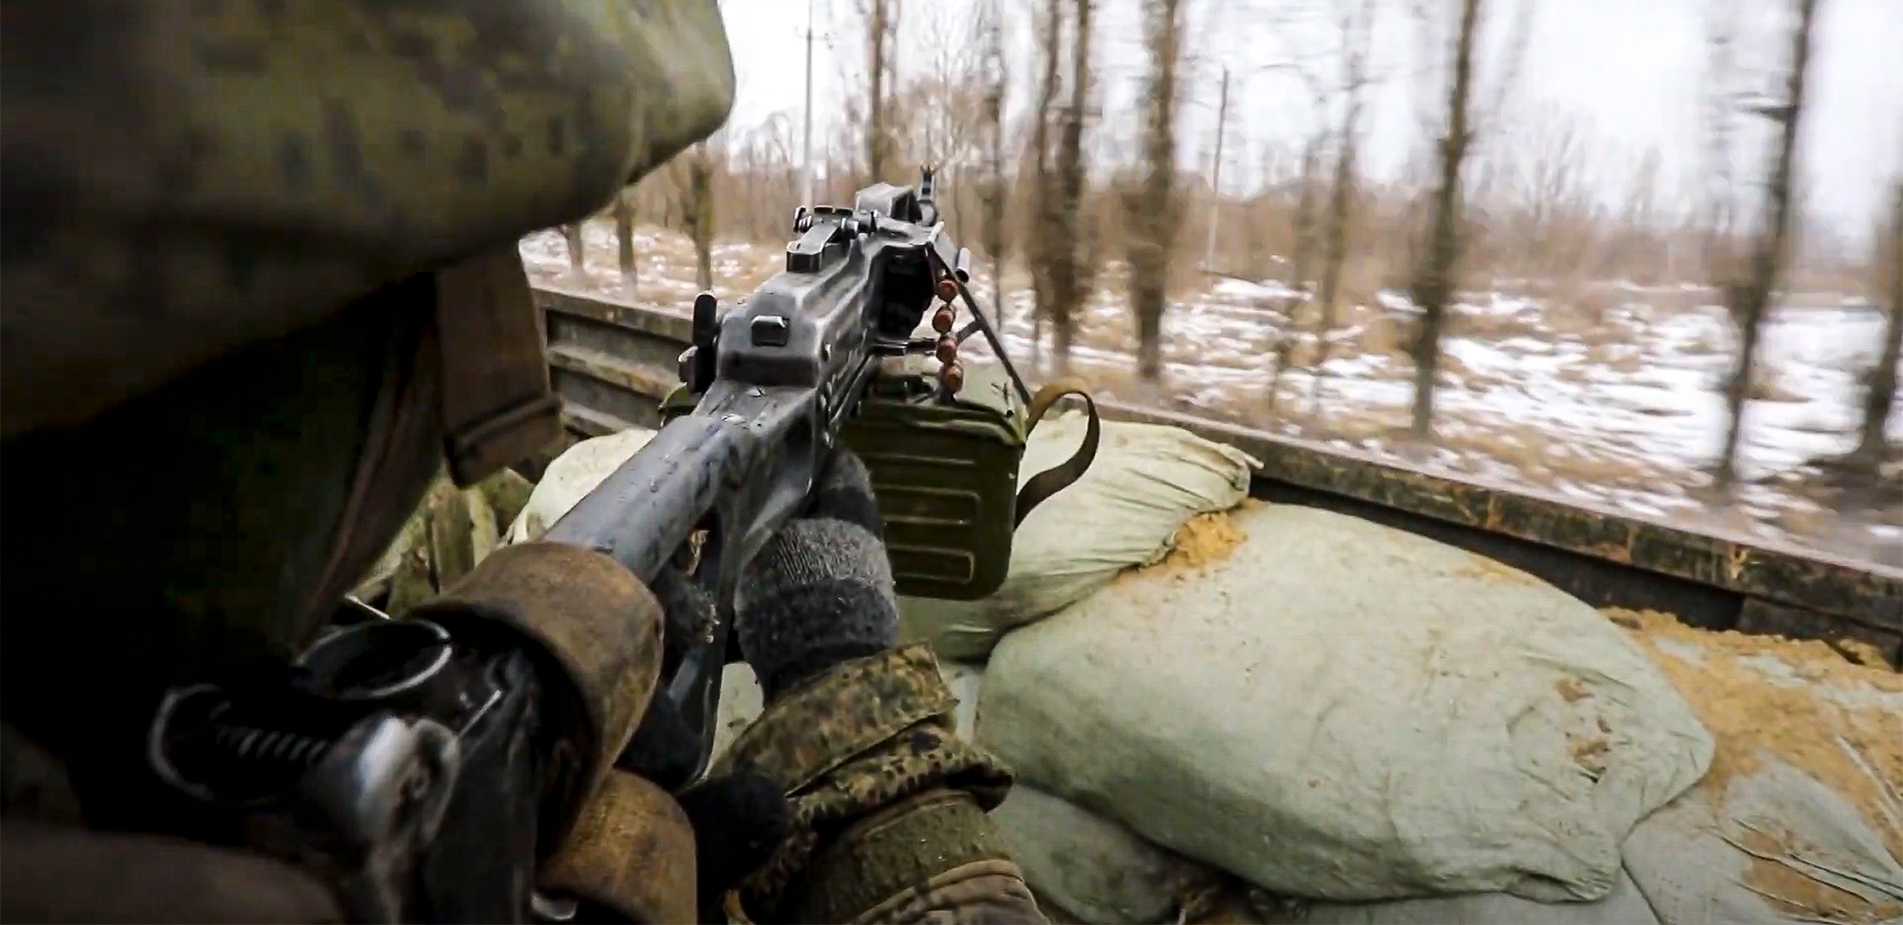 Οι Ρώσοι πολεμούν στην Ουκρανία με αμερικανικές σφαίρες – Πώς η Μόσχα προμηθεύεται δυτικά πυρομαχικά παρά τις κυρώσεις